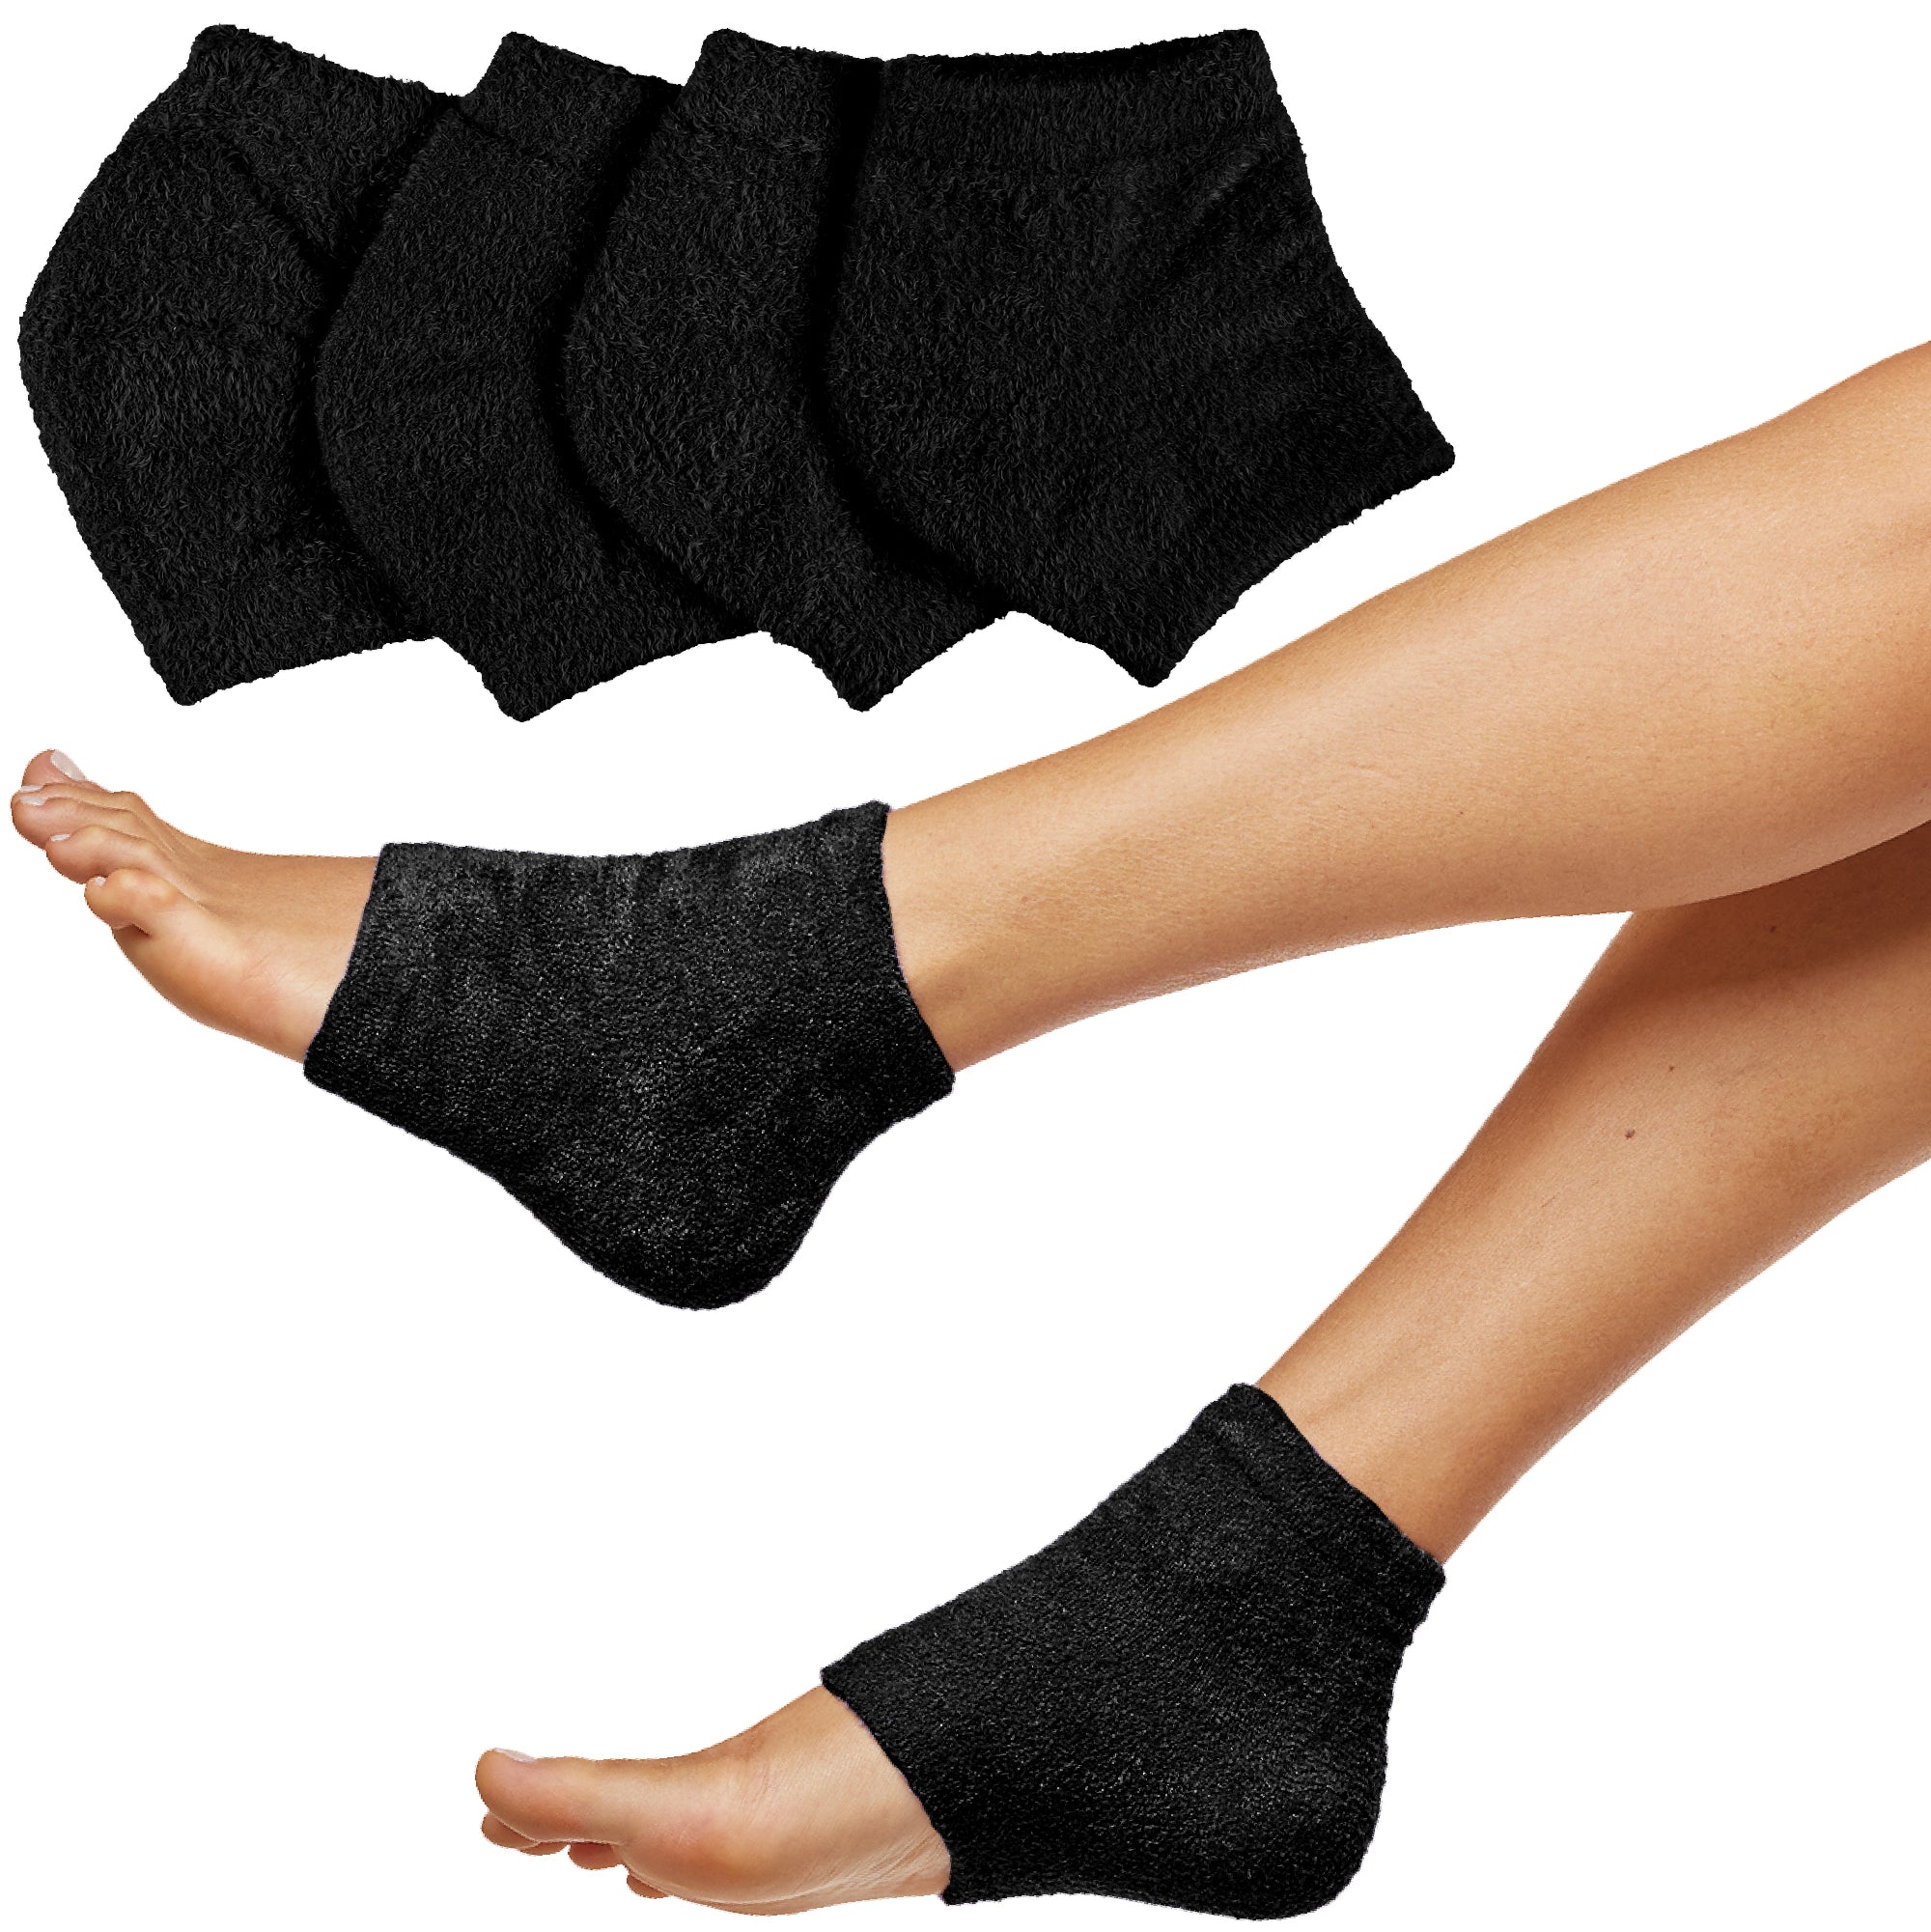 Women's Calzedonia Socks from £6